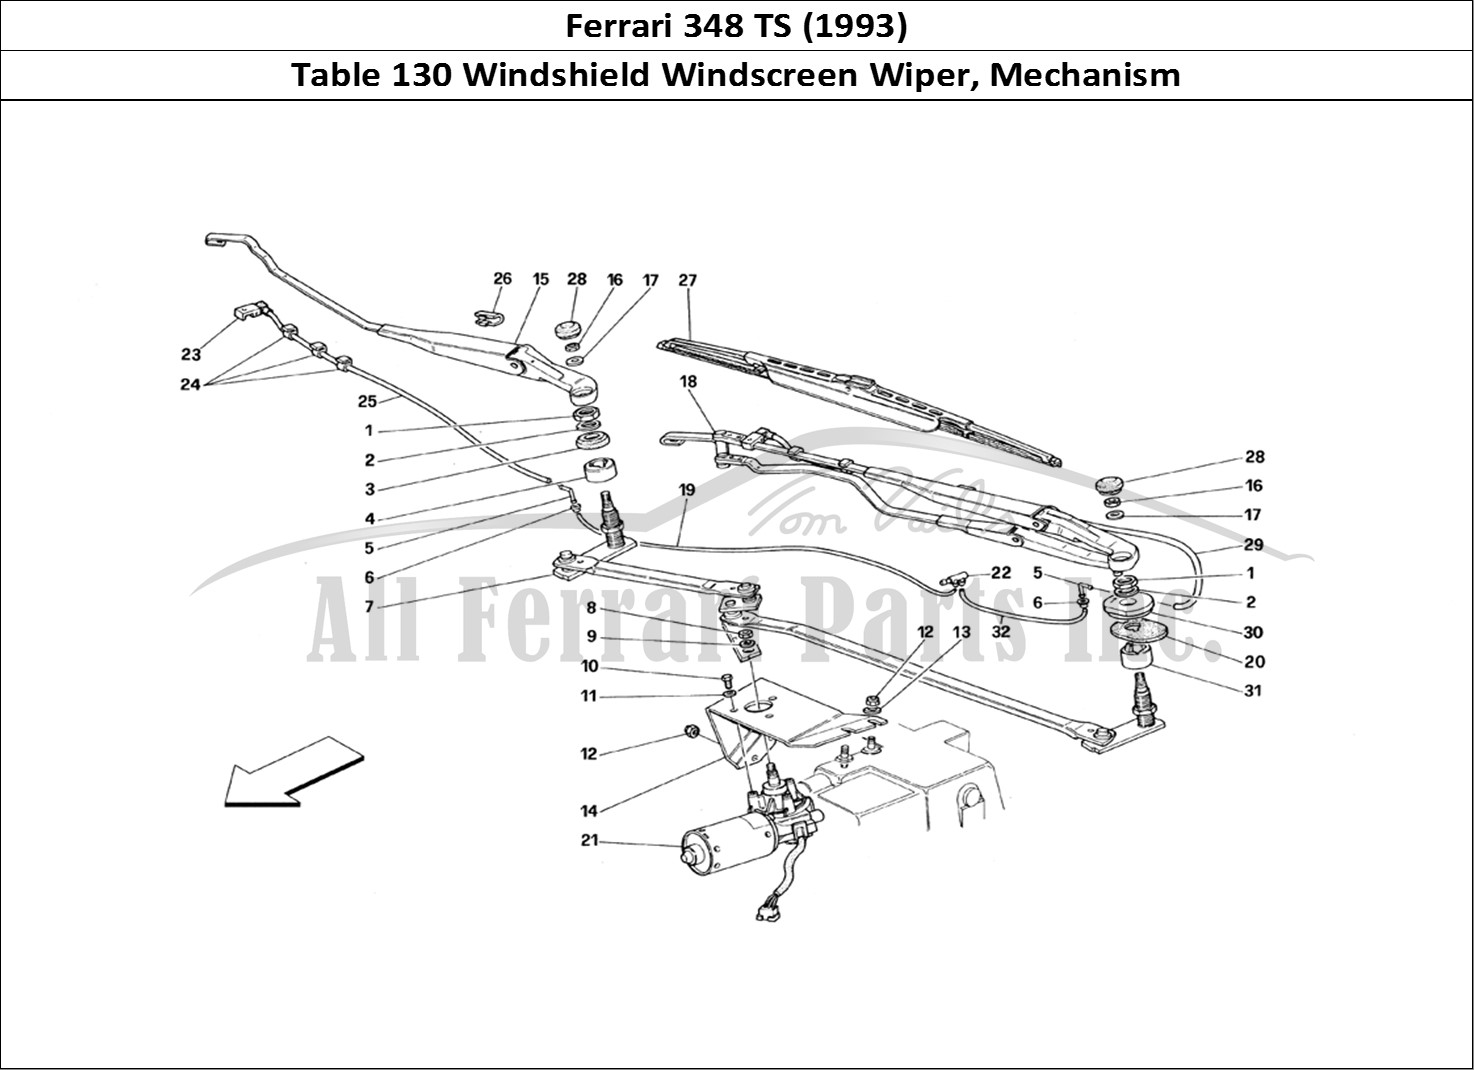 Ferrari Parts Ferrari 348 TB (1993) Page 130 Windshield Wiper and Move